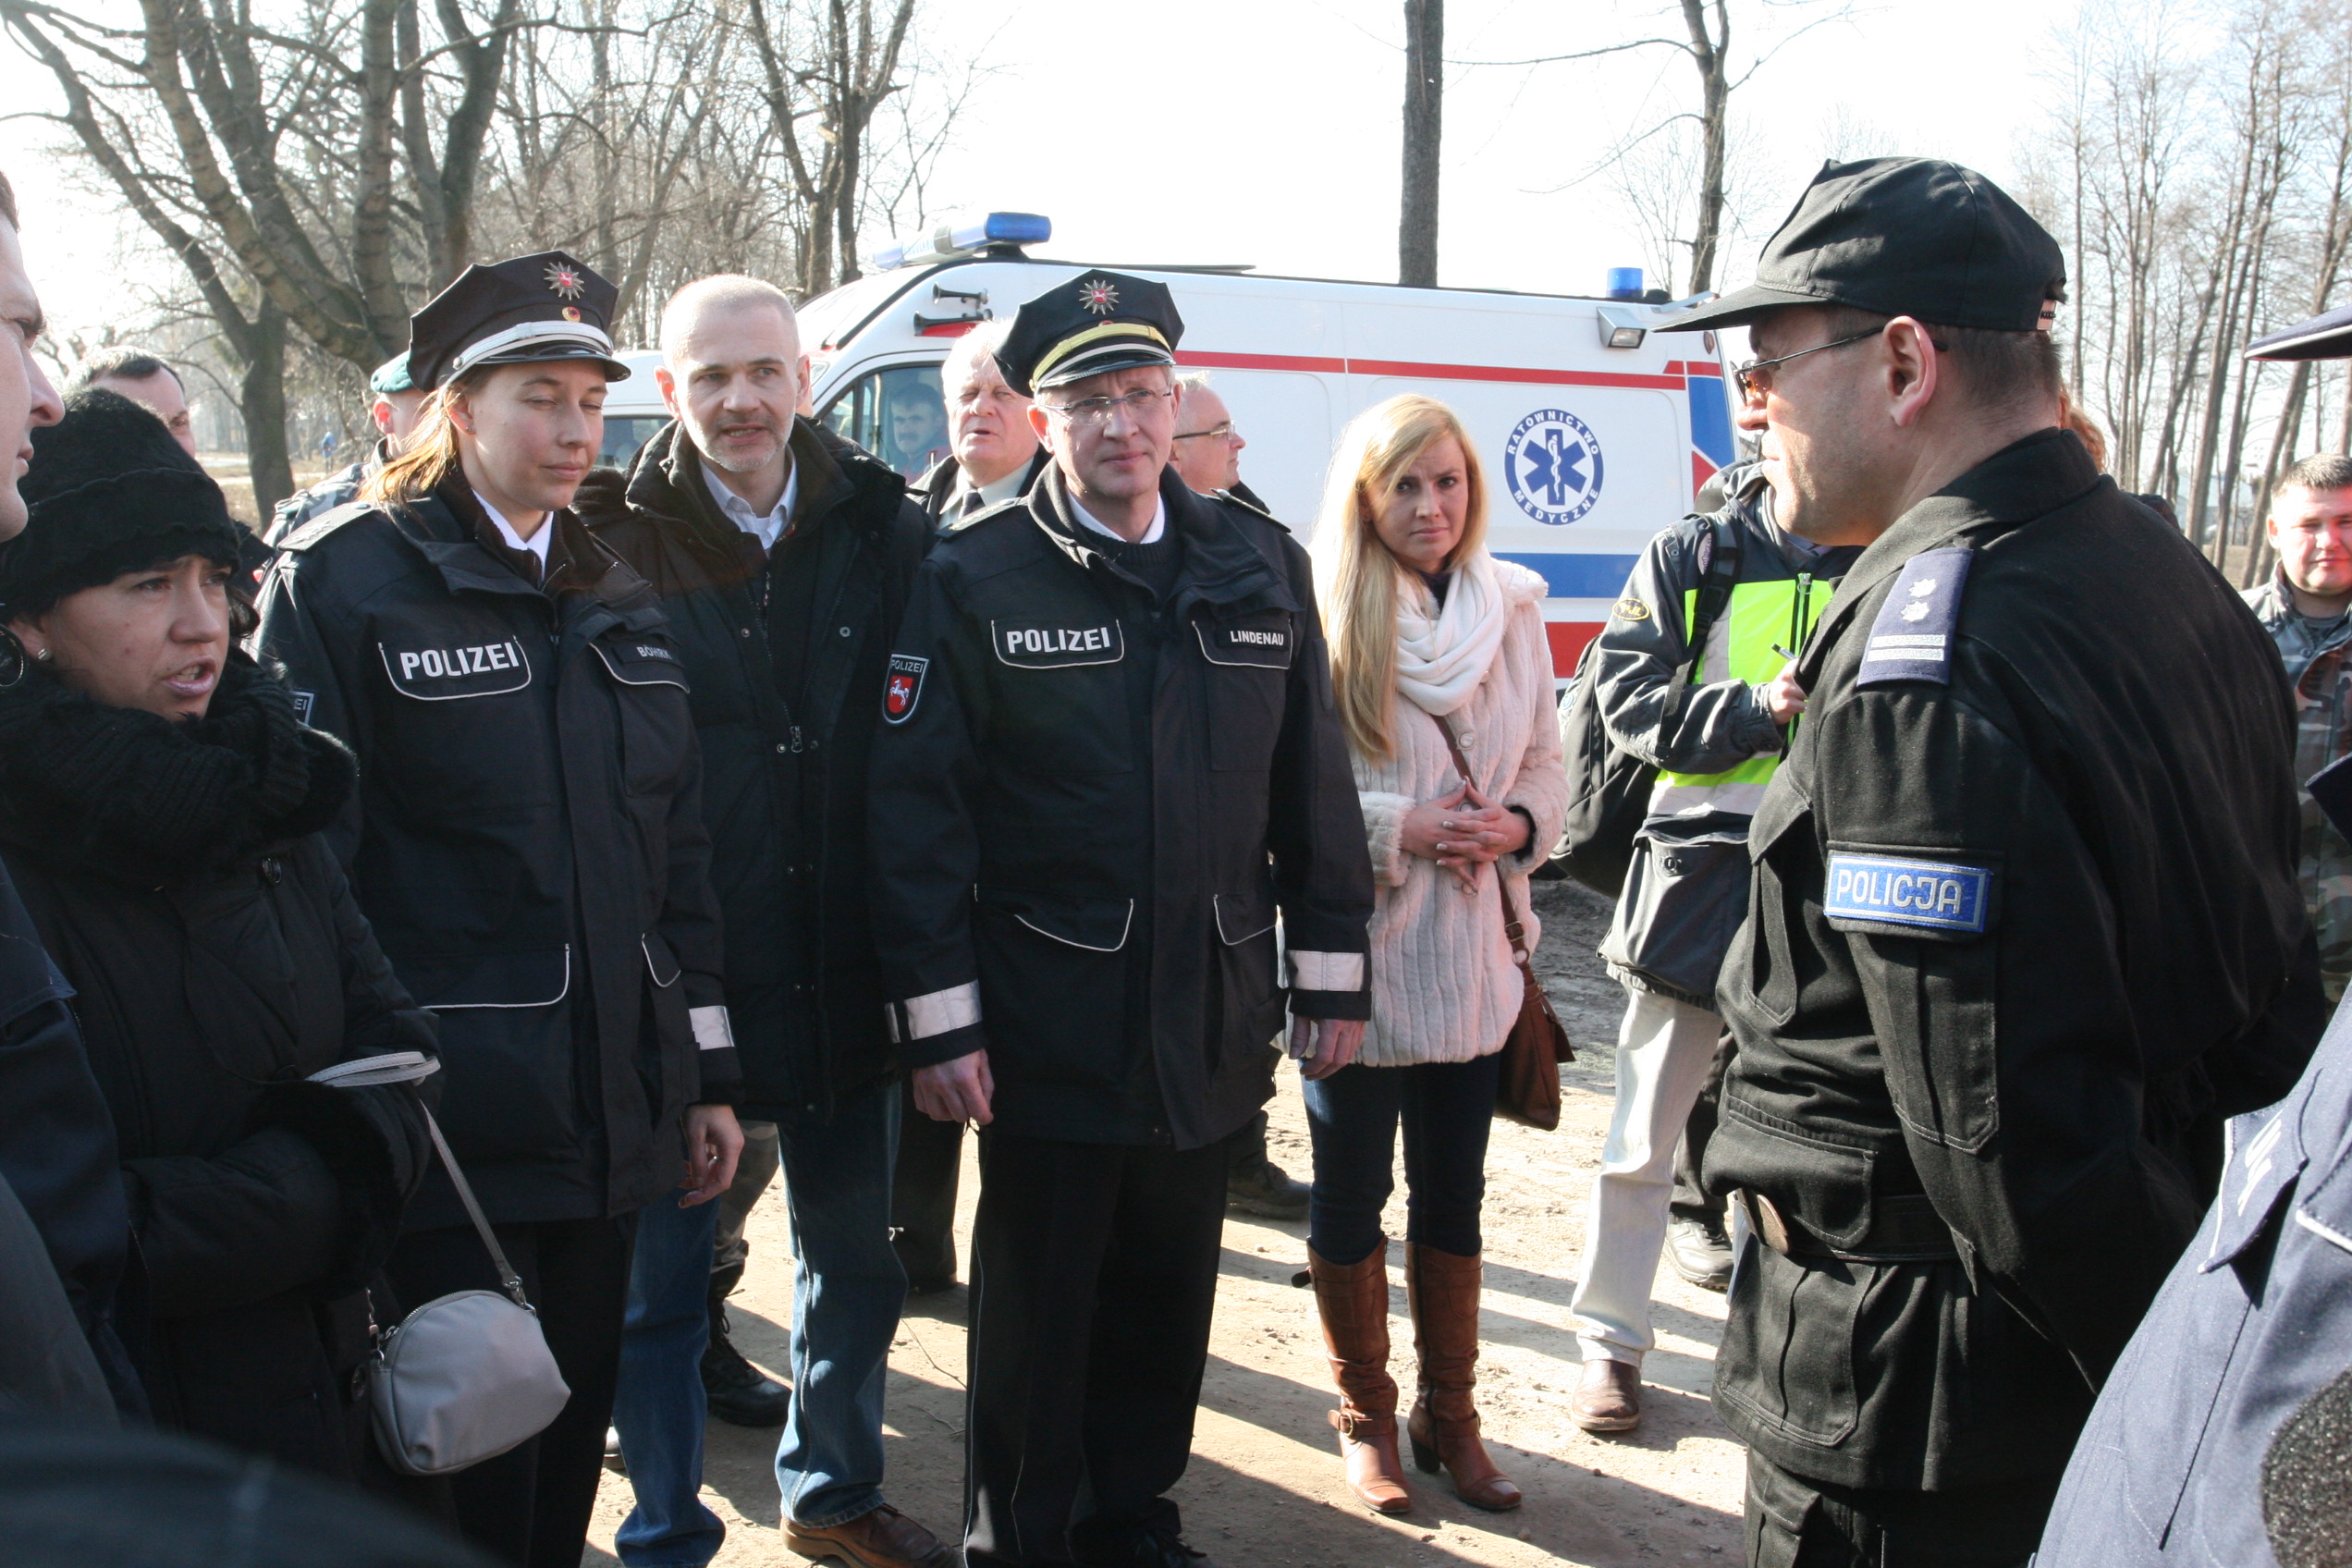 Naczelnik Sztabu Policji Komendy Wojewódzkiej Policji w Lublinie przedstawia scenariusz ćwiczeń delegacjom zagranicznym.